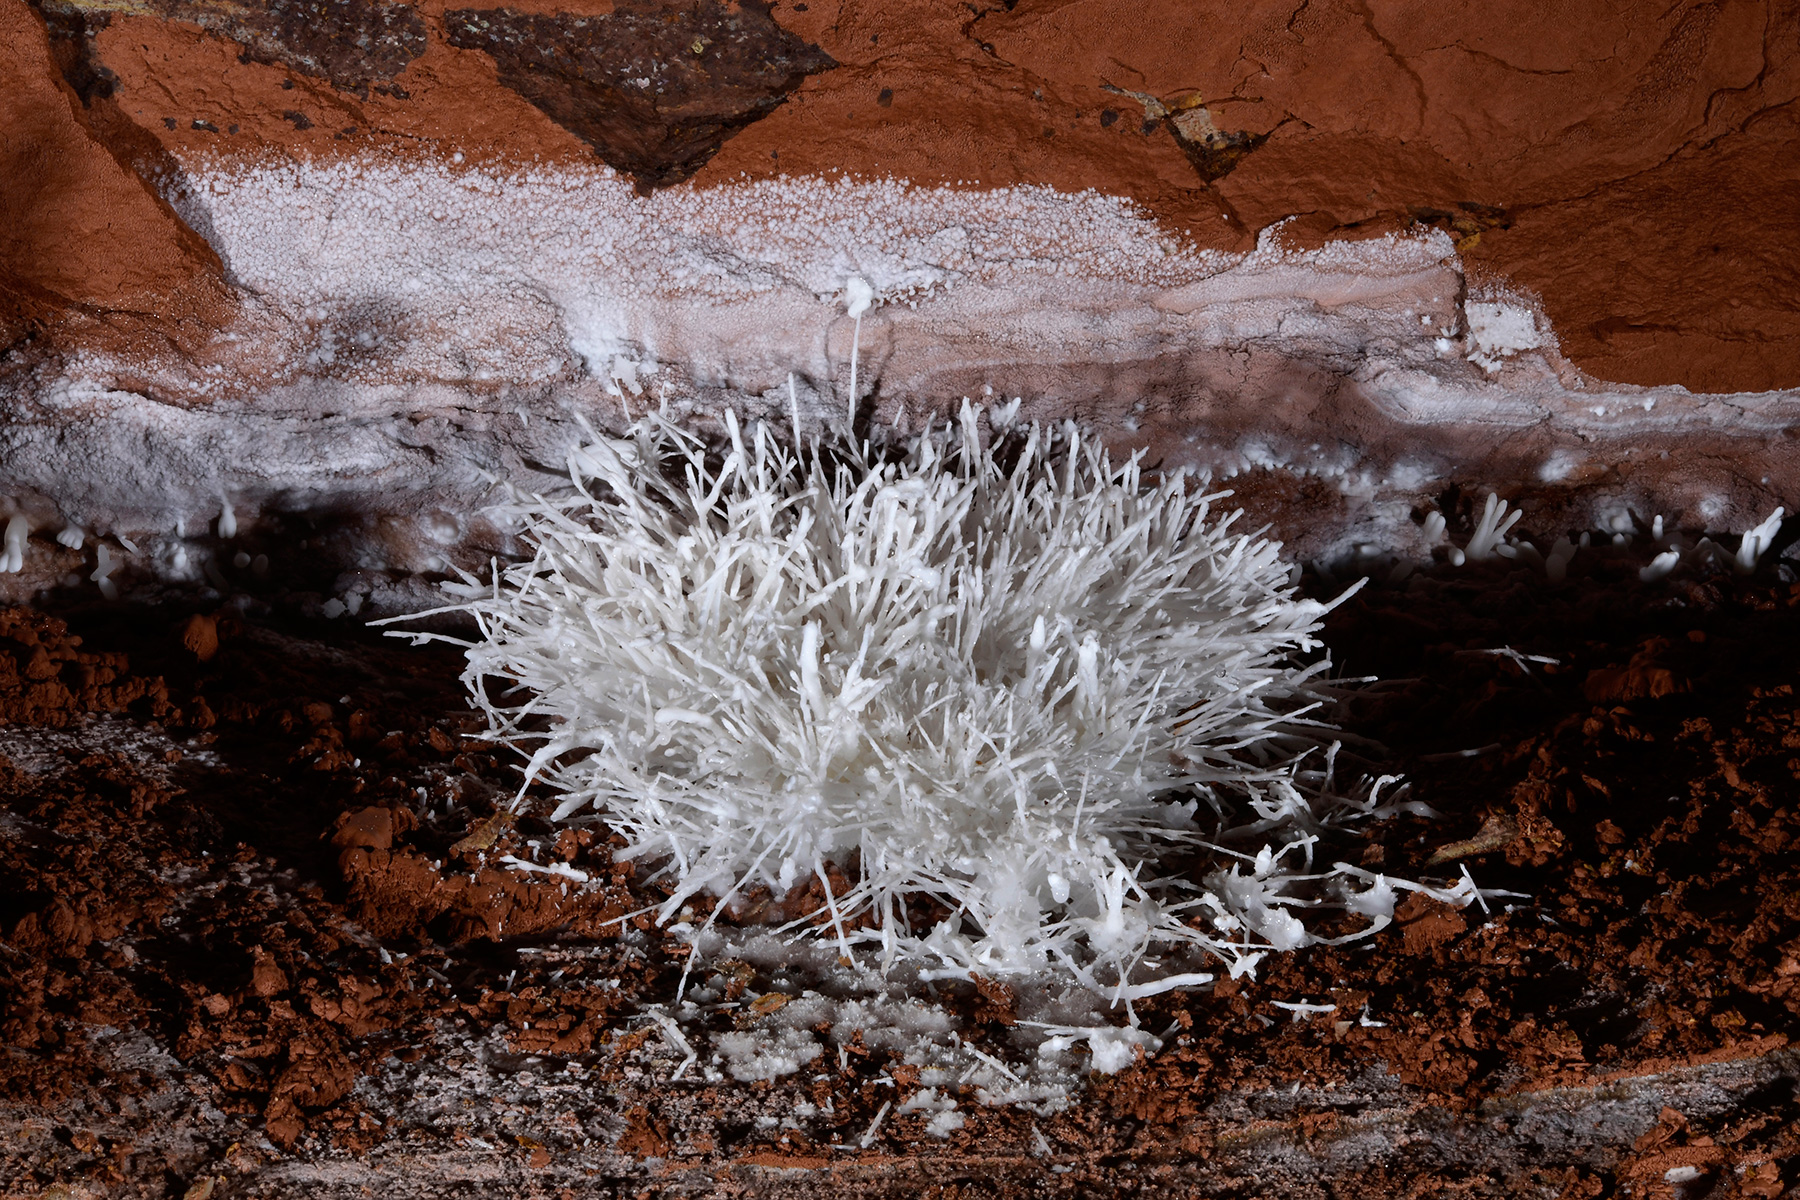 Cave of the Winds (USA - Colorado) - Bouquet de fines concrétions d'aragonite blanche sur un sol rouge